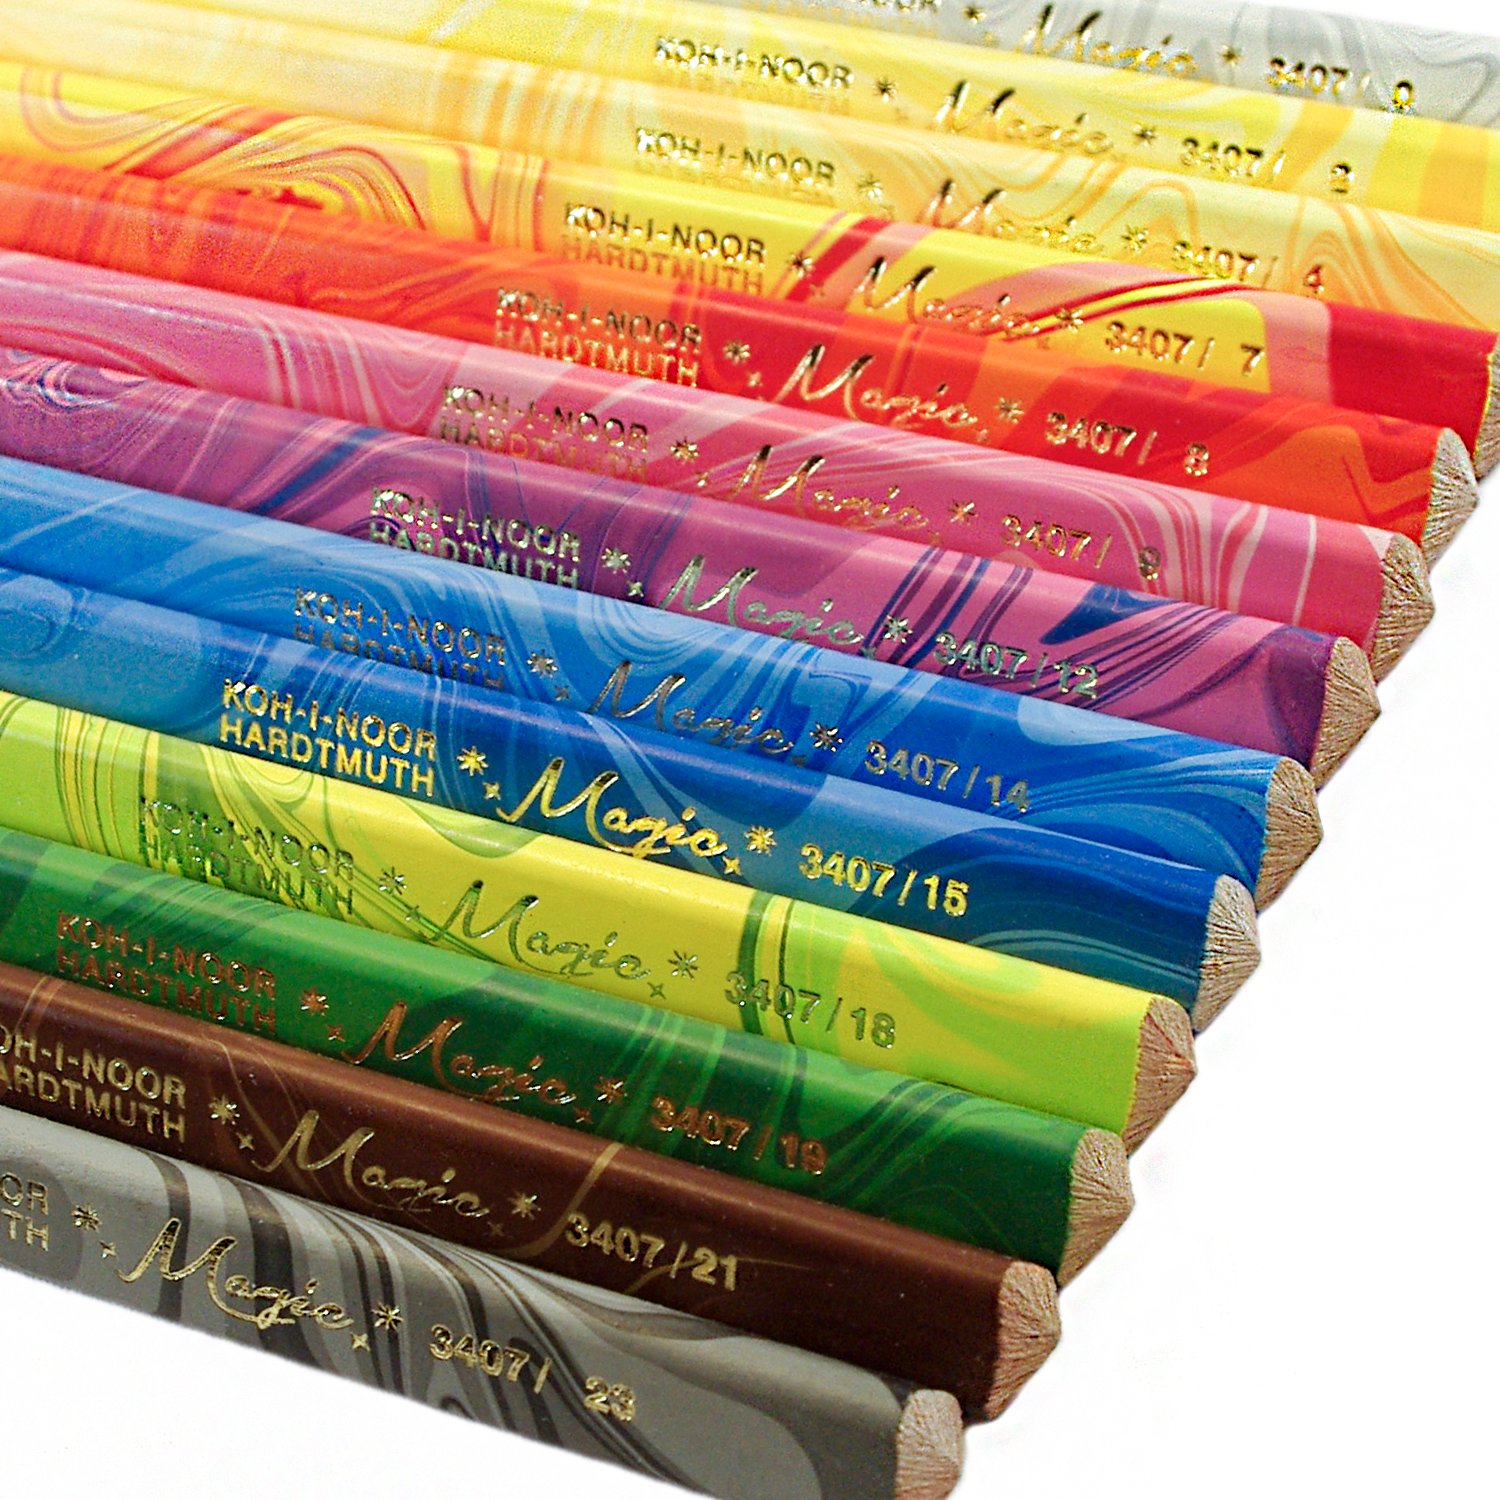 Карандаши с многоцветным грифелем KOH-I-NOOR, набор 13 шт., "Magic", трехгранные, грифель 5,6 мм, европодвес, 3408013001KS